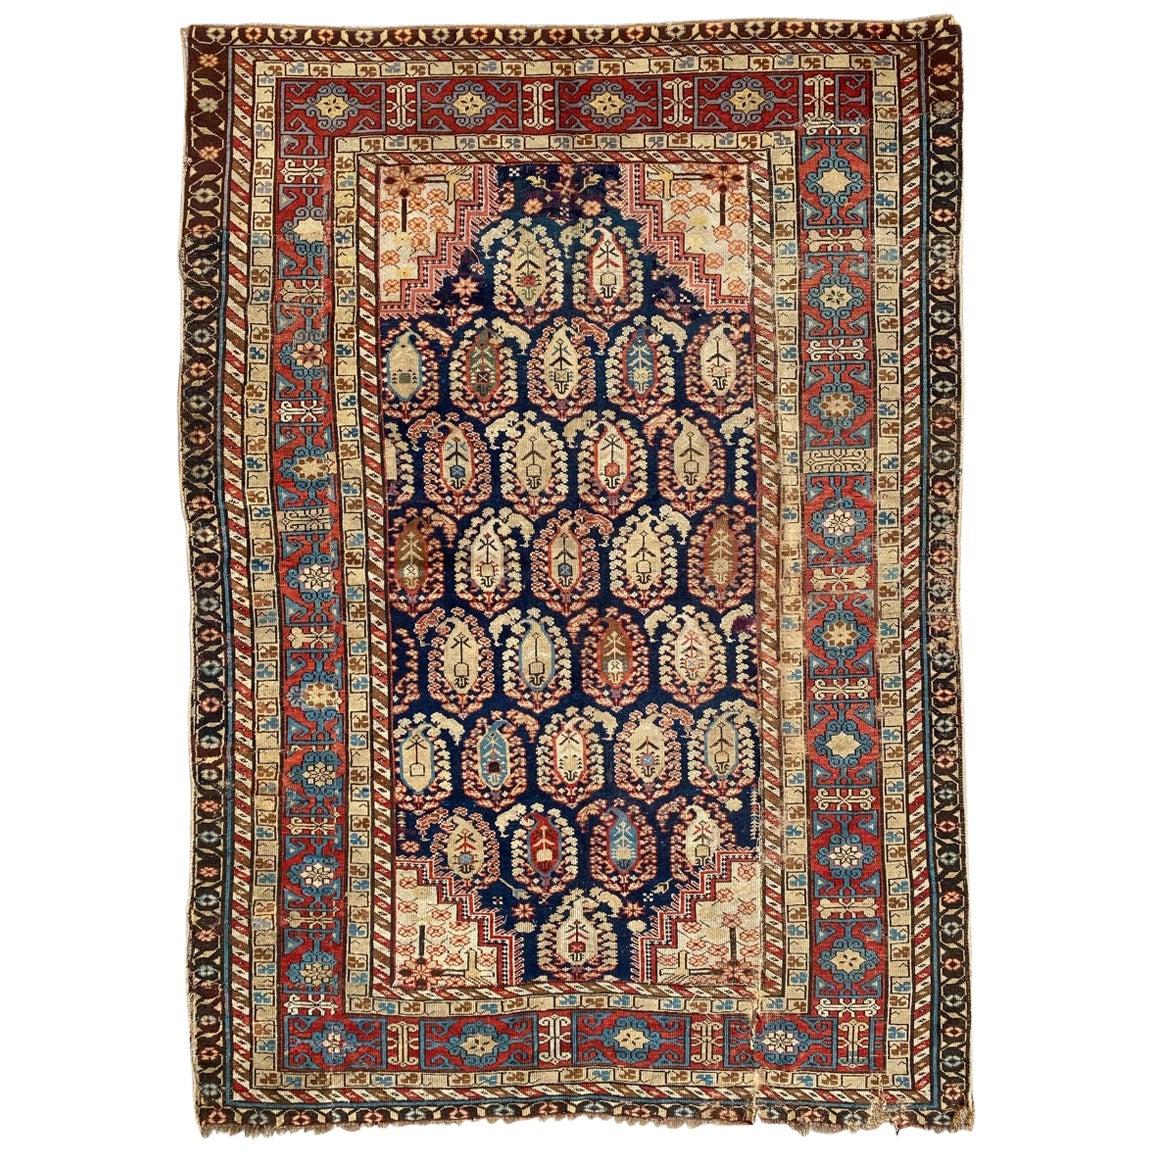 Bobyrug's Antique Caucasian Chirwan Rug (tapis caucasien antique)